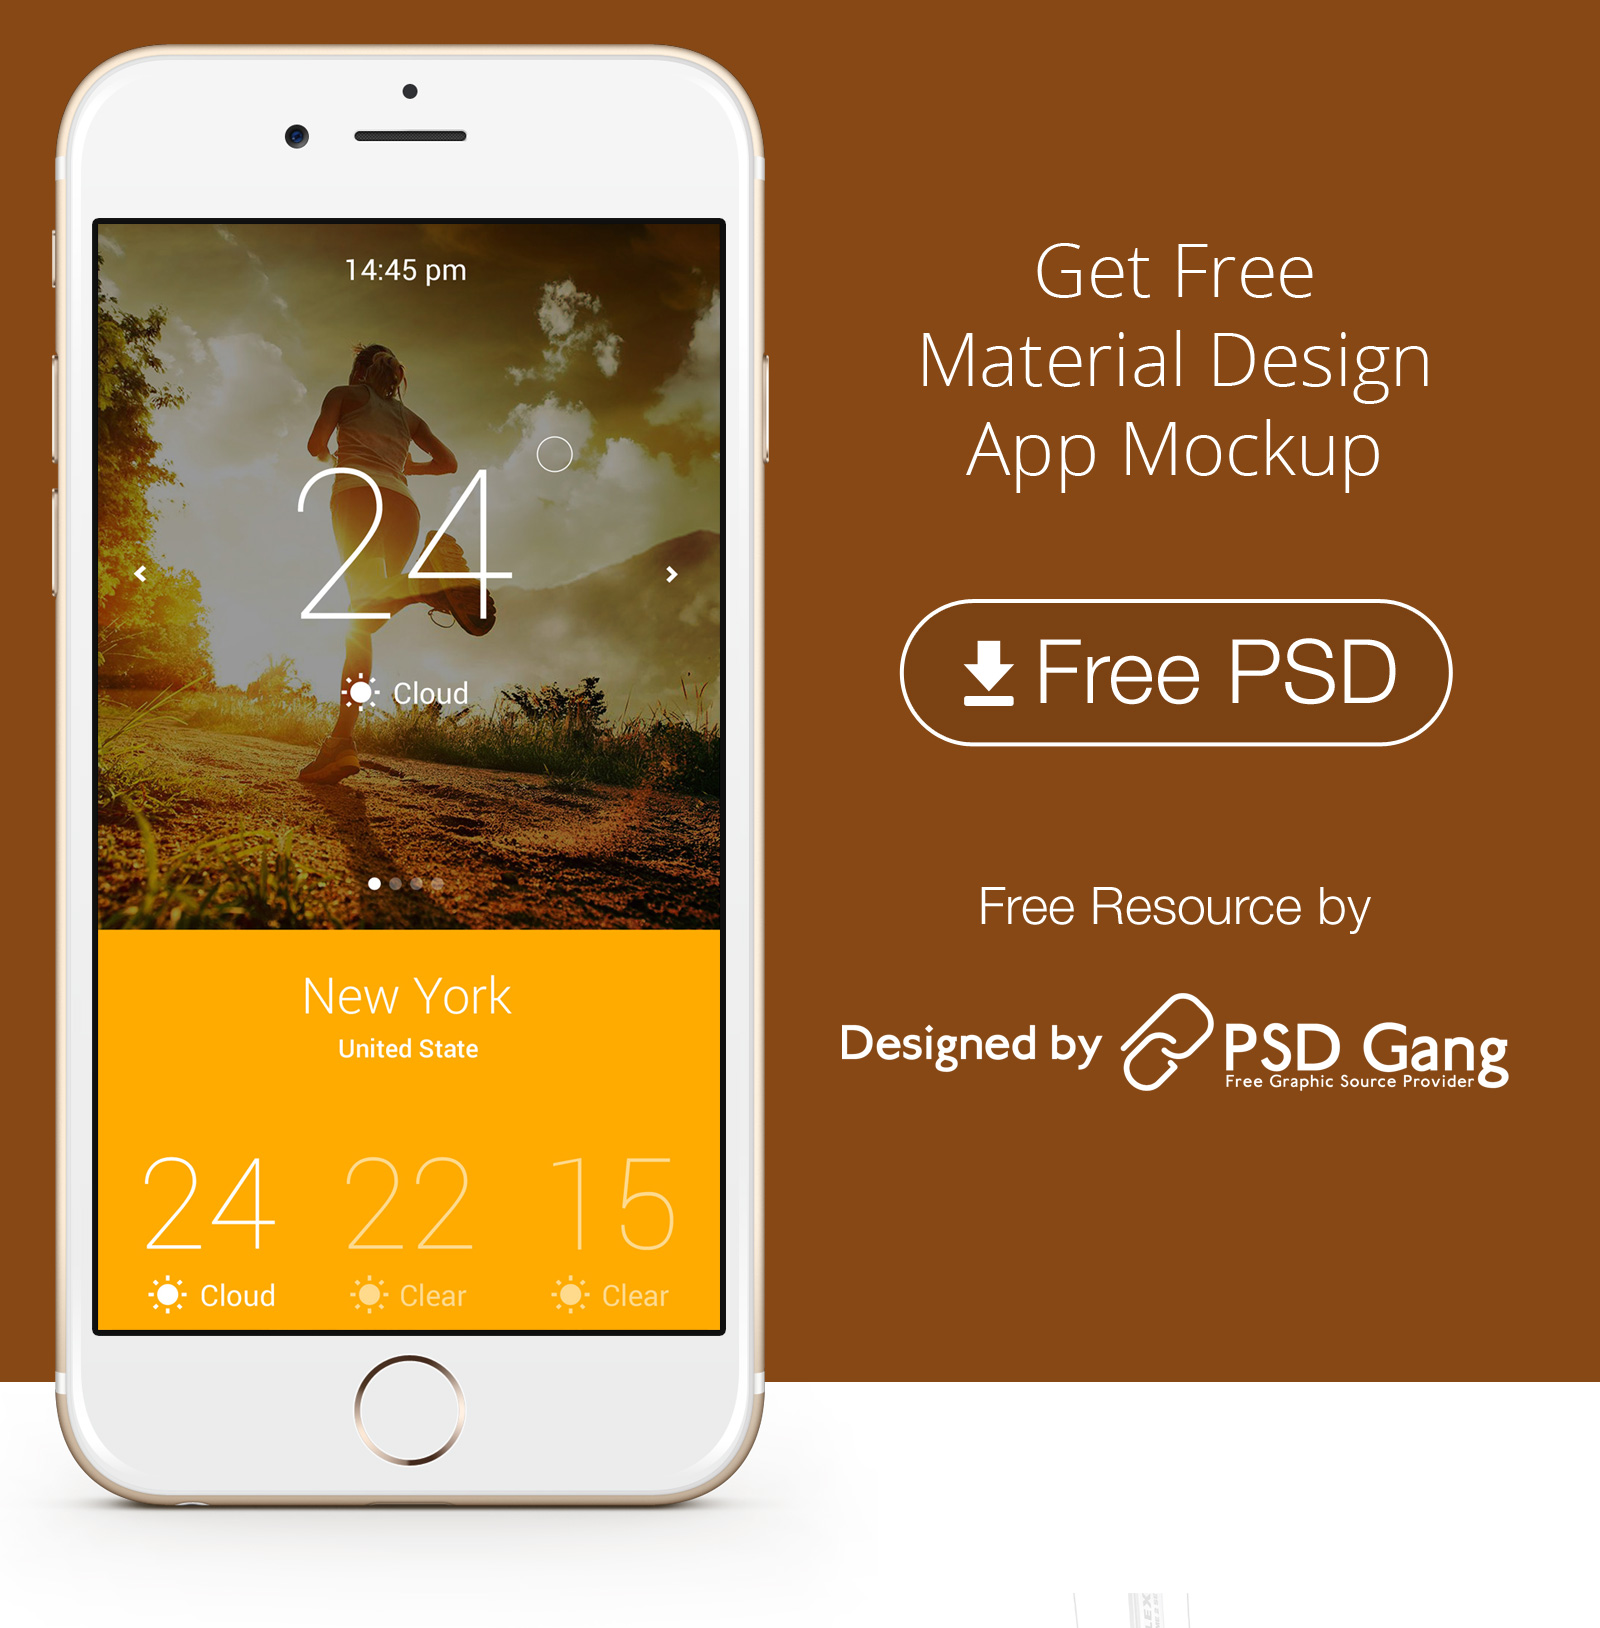 Get Free Material Design App Mockup PSD